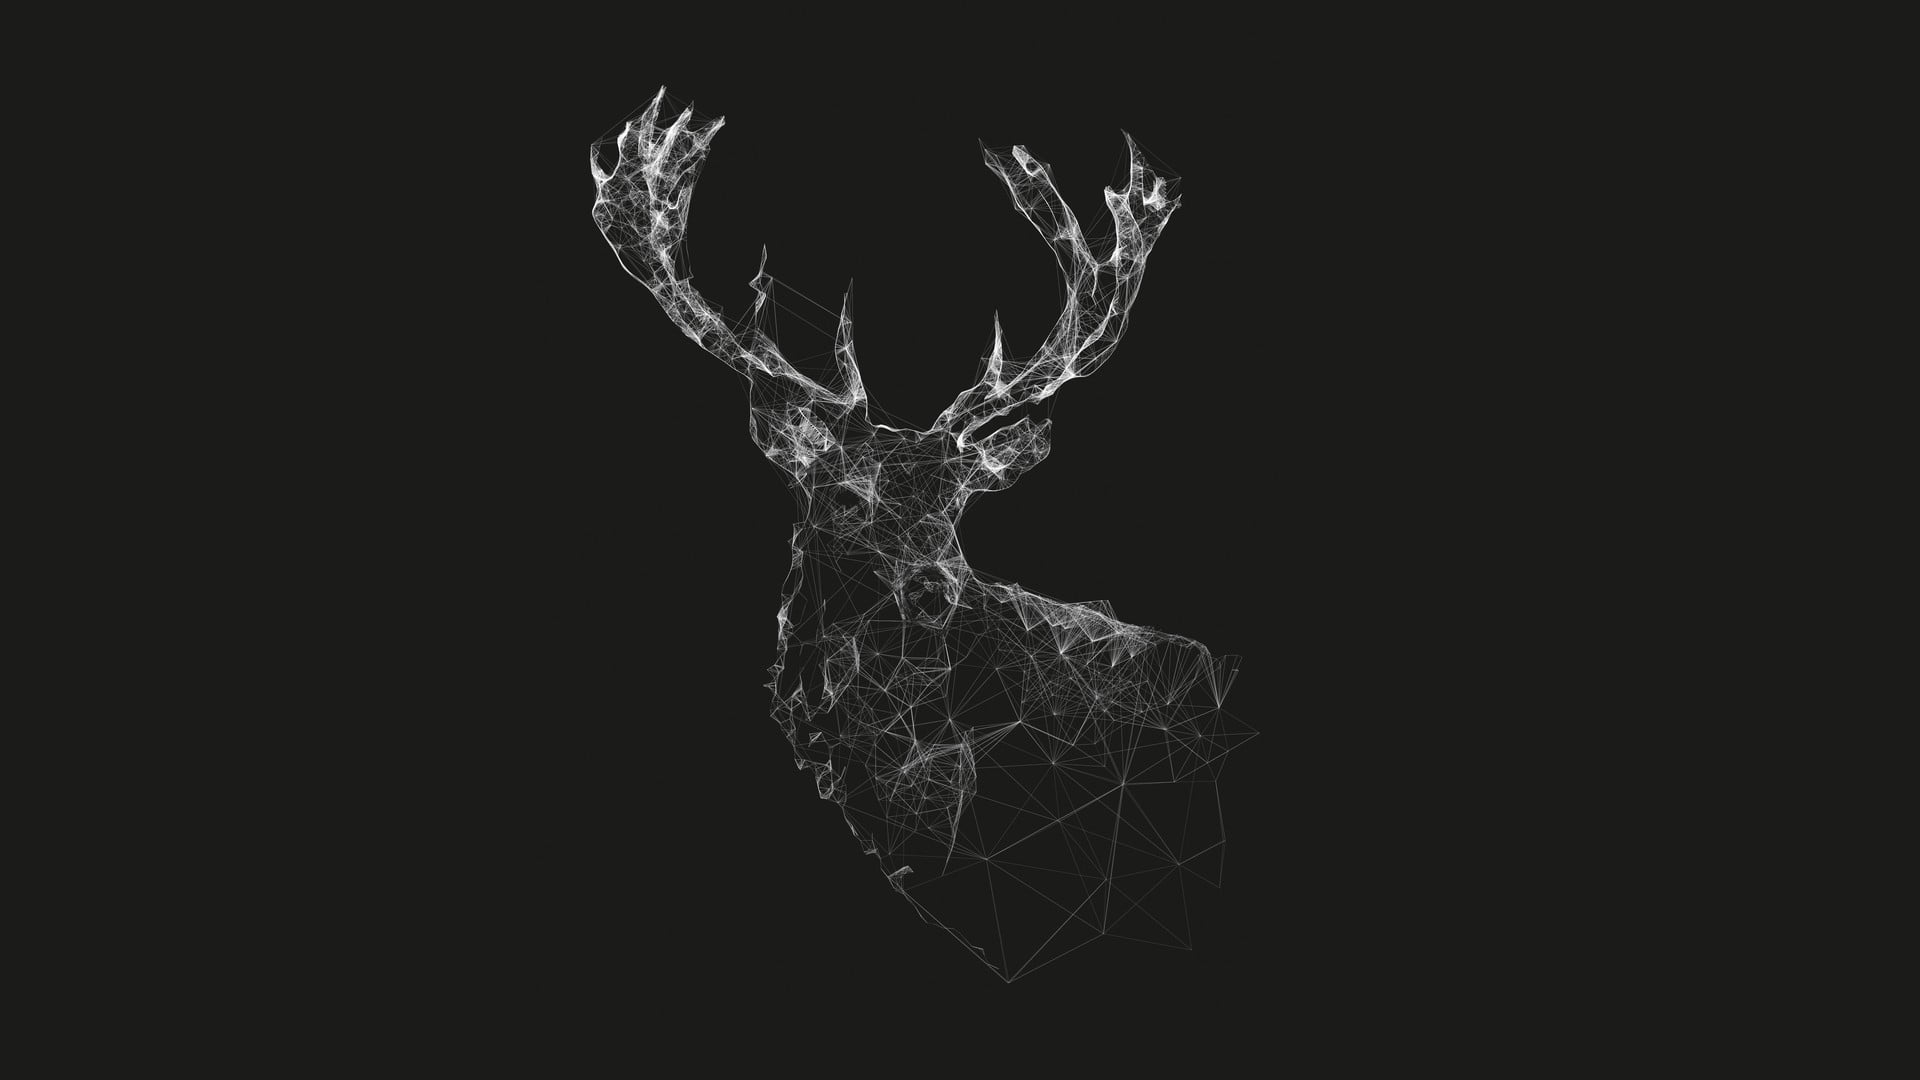 Wallpaper white deer sketch, grey deer digital wallpaper, geometry, wireframe